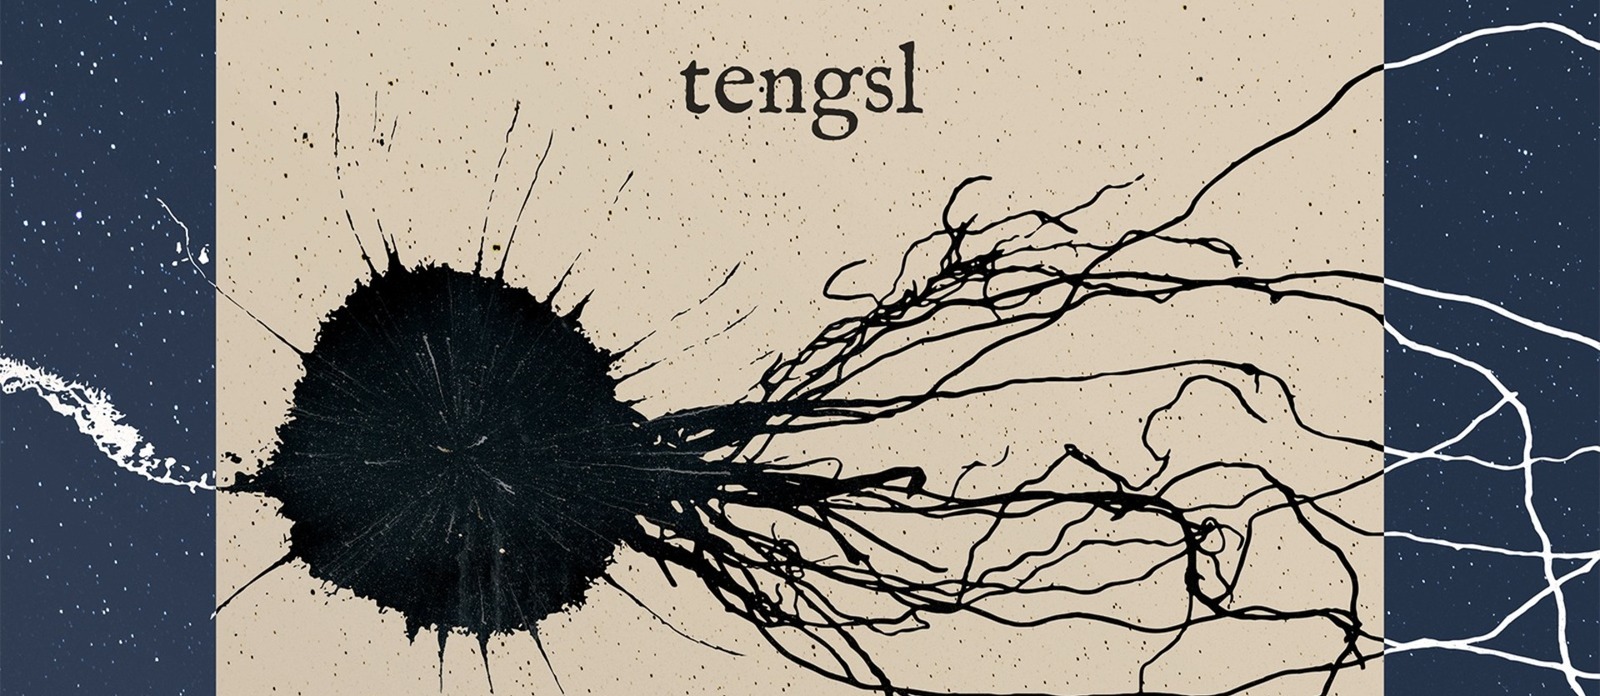 tengsl - predstavitev albuma  |  koncert X.U.L